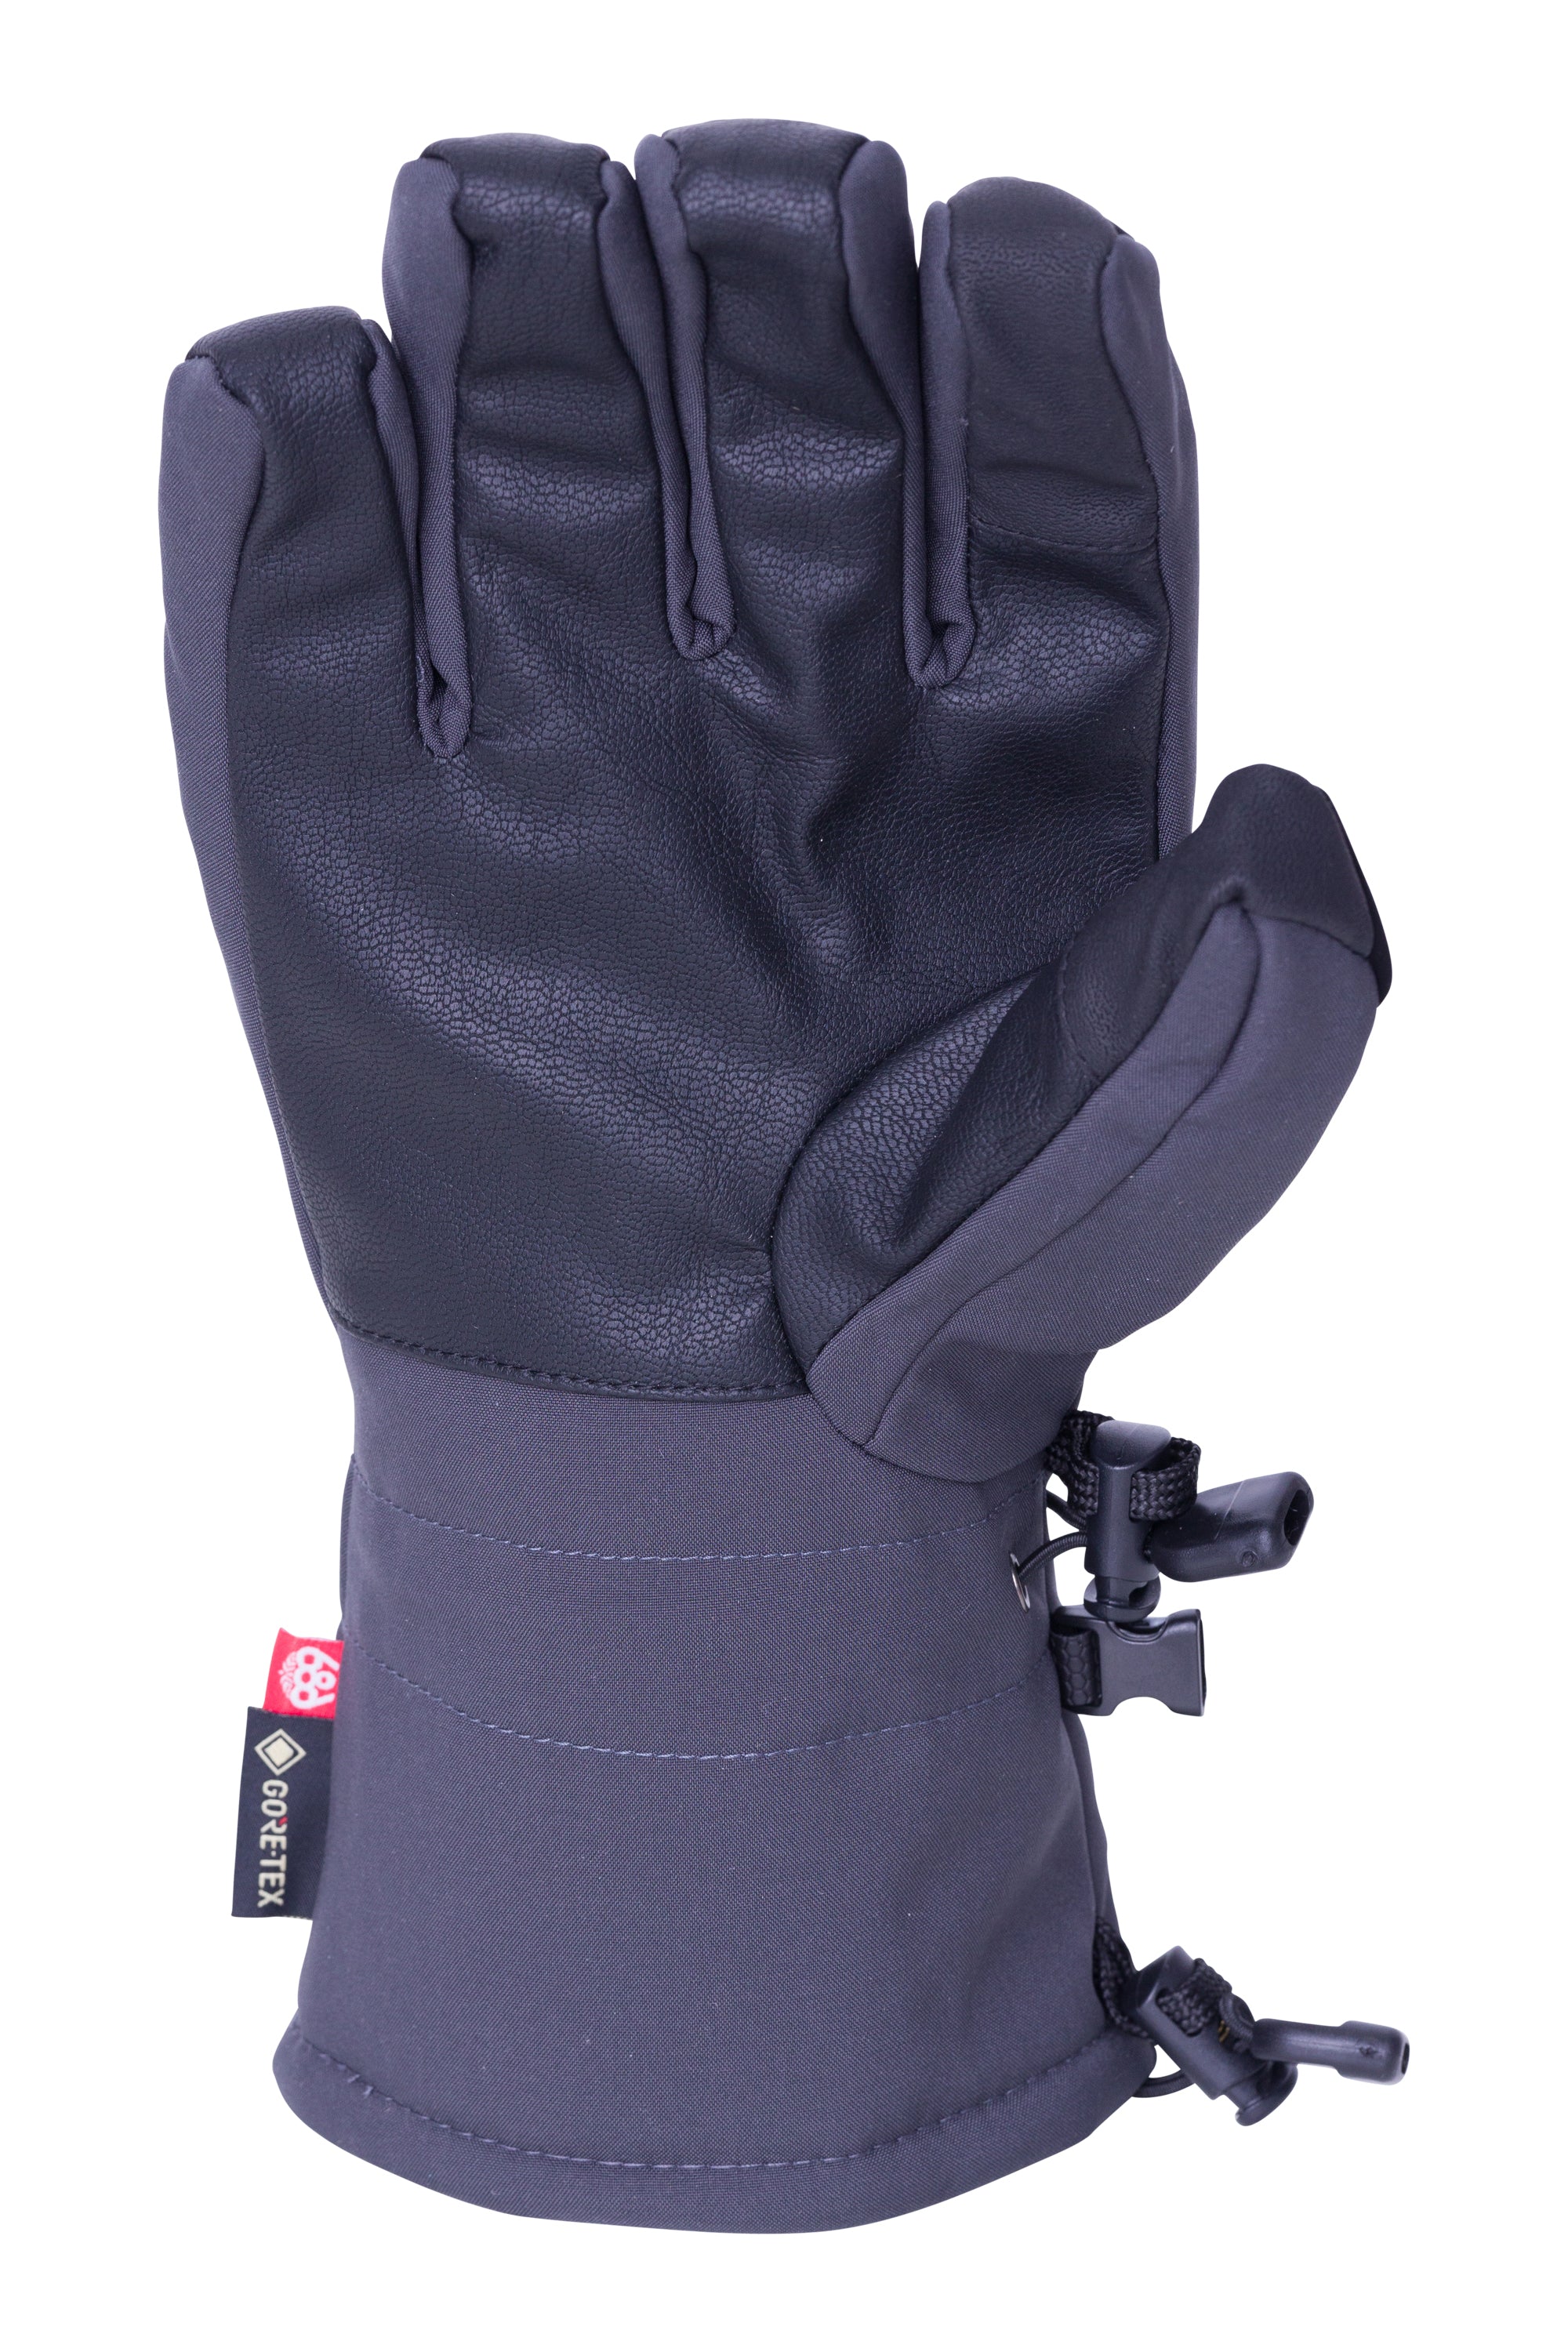 686 Gore-Tex Linear Gloves - 88 Gear